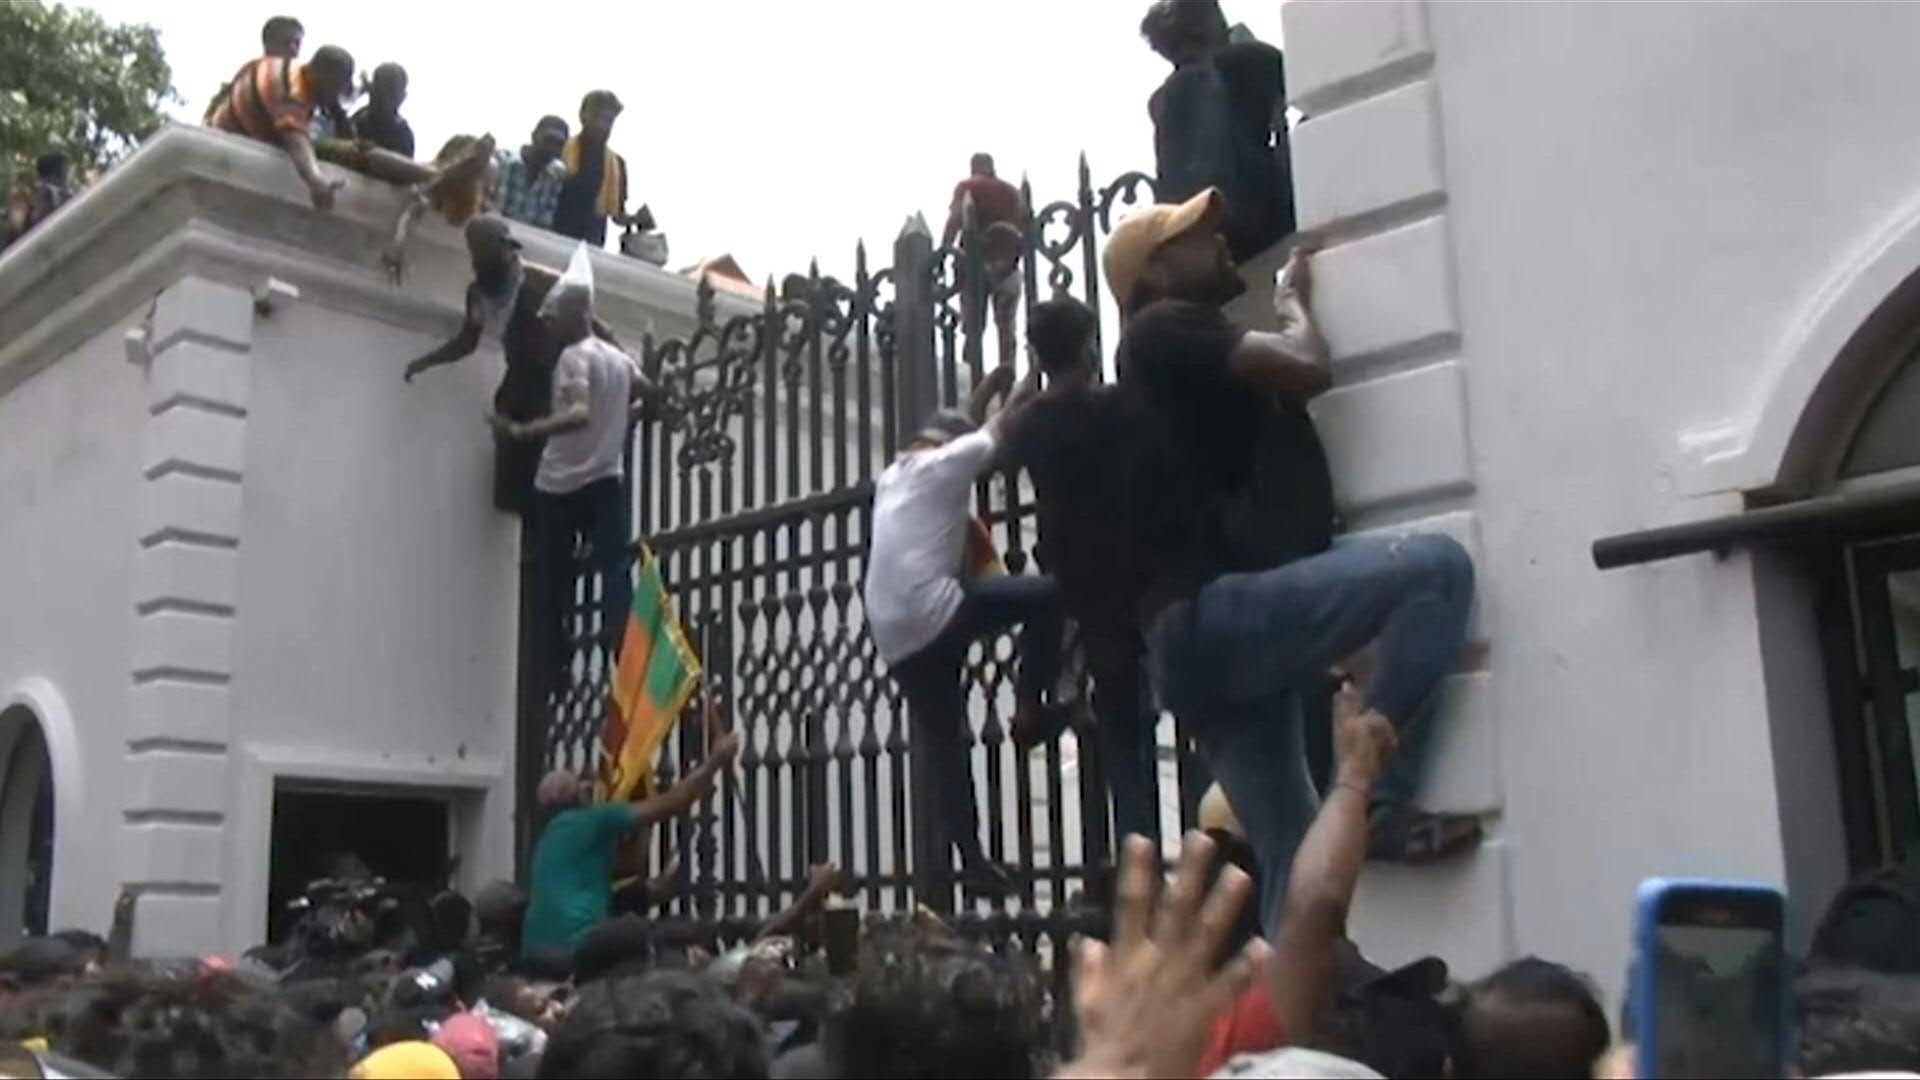 Al menos 103 personas resultaron heridas en Sri Lanka durante las protestas masivas contra el presidente Rajapaksa